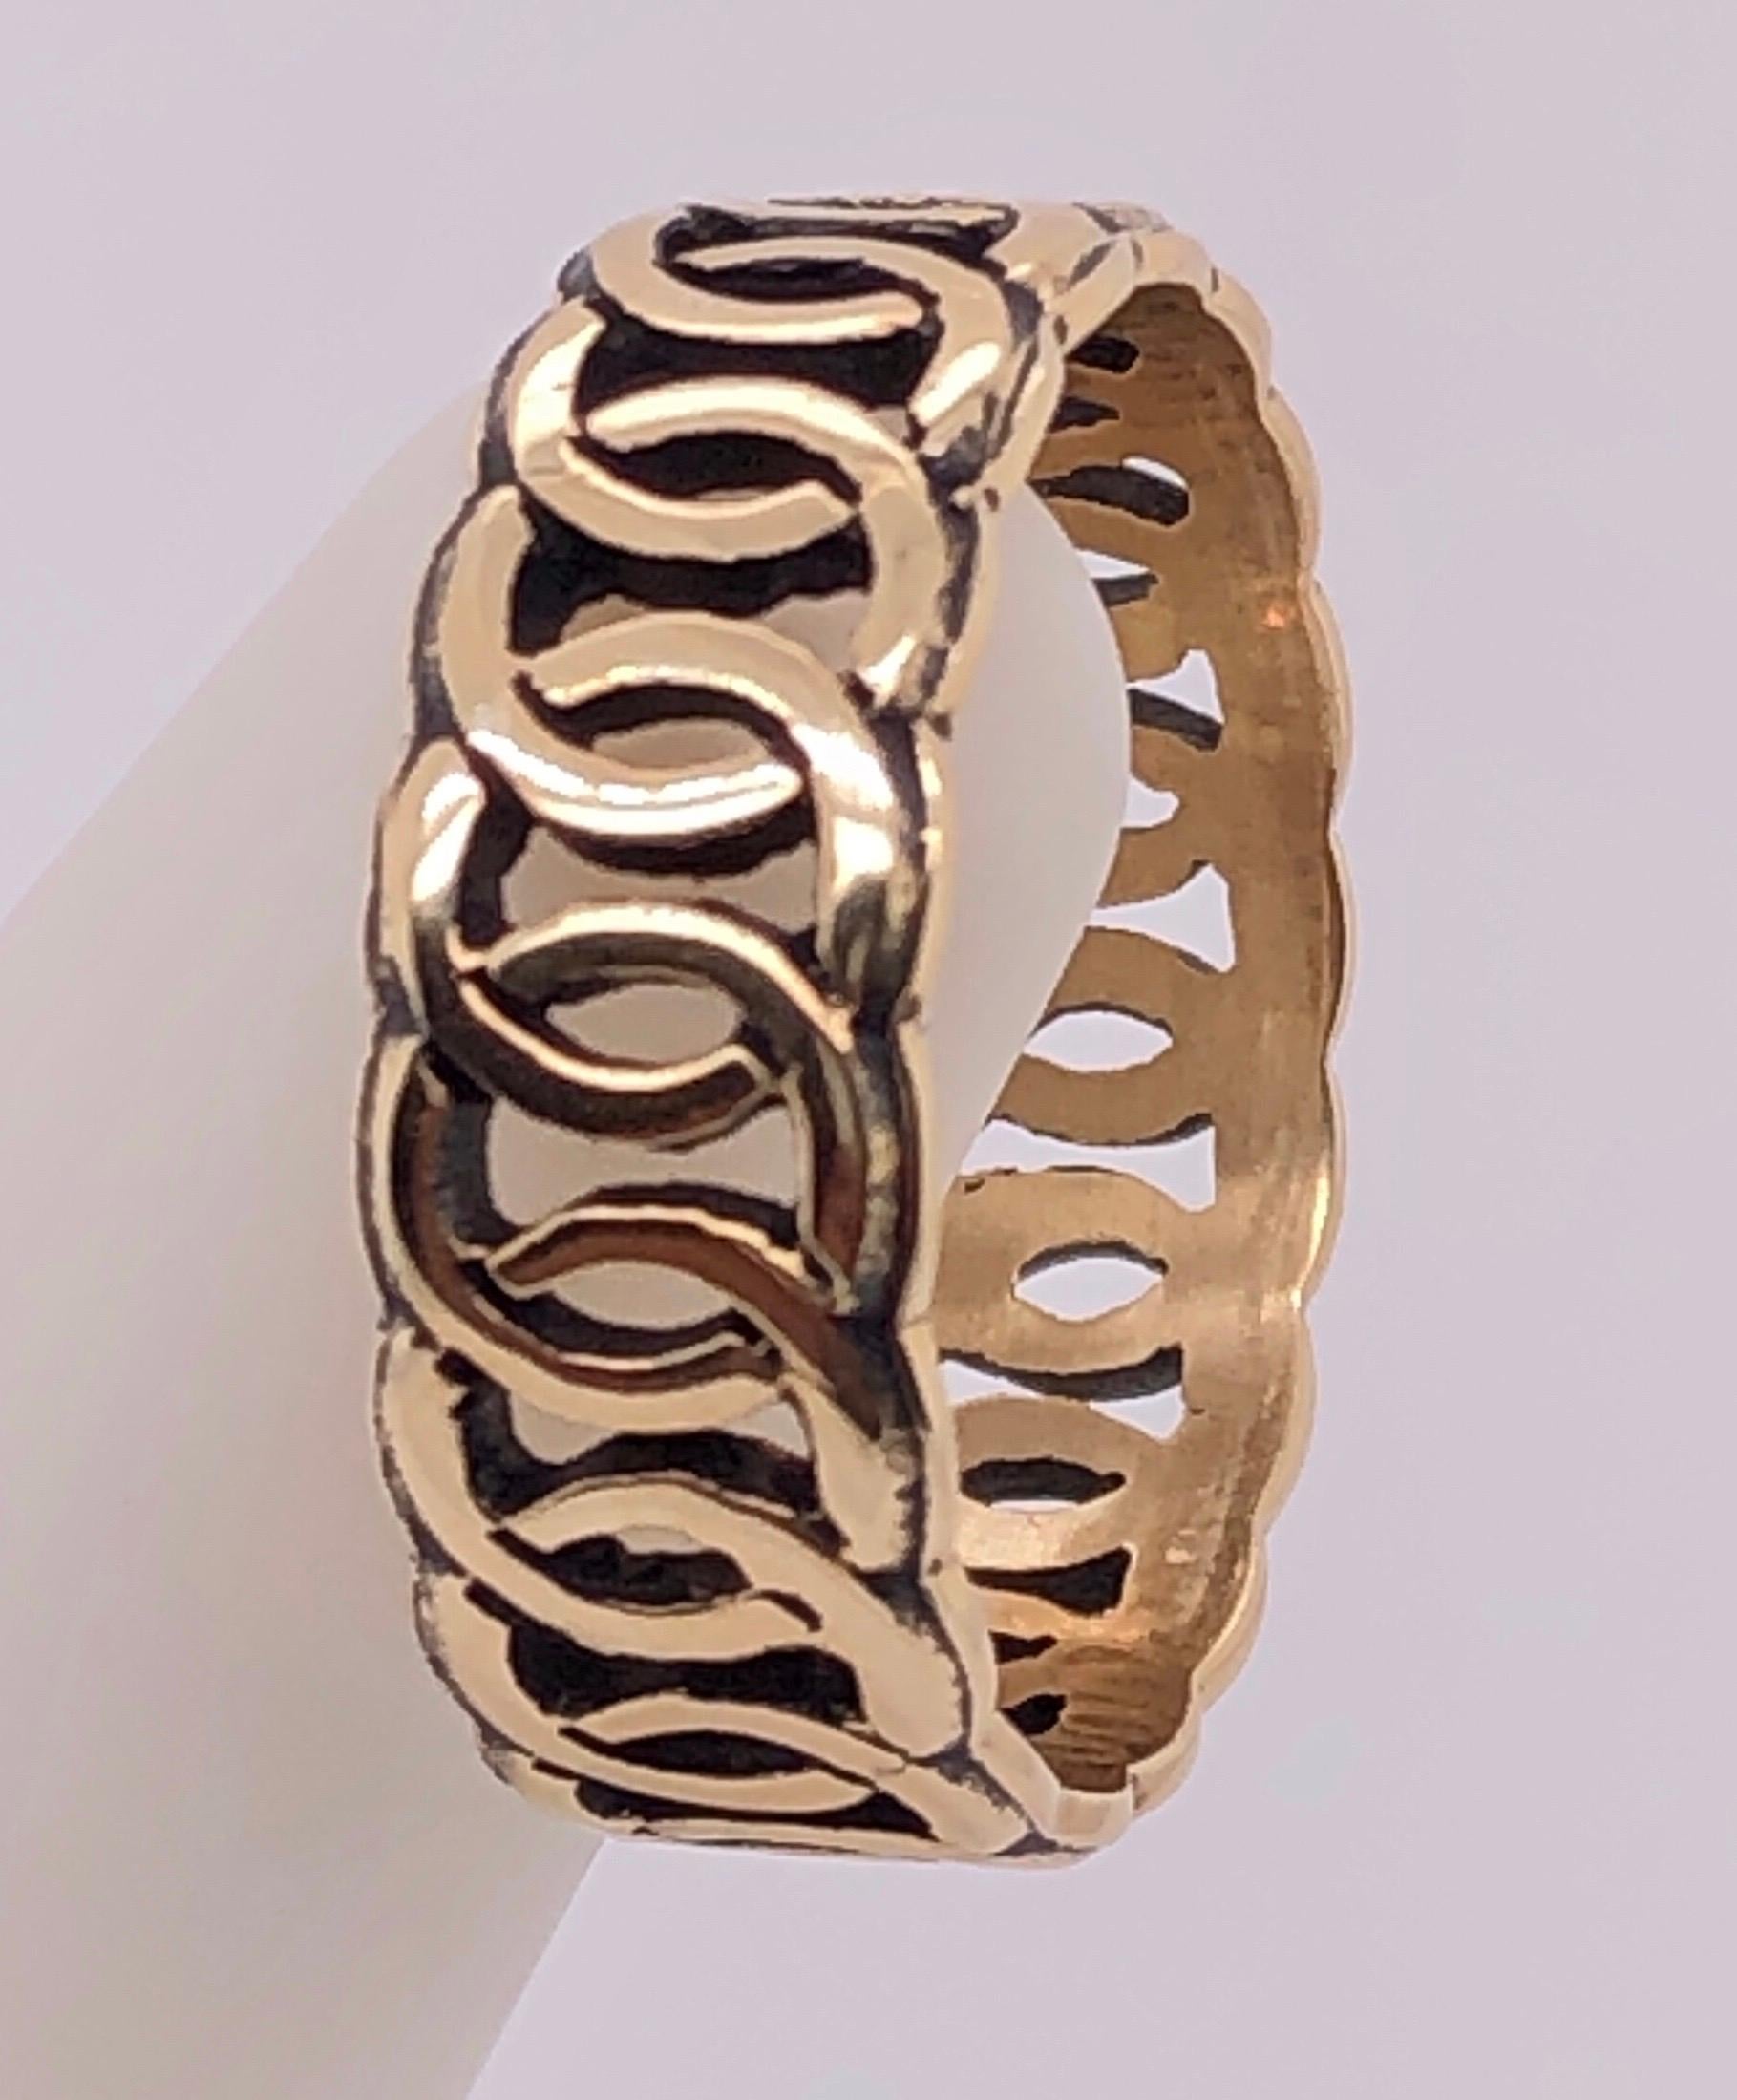 14 Karat Yellow Gold Band/Wedding Ring Size 9.75.
5.2 grams total weight.